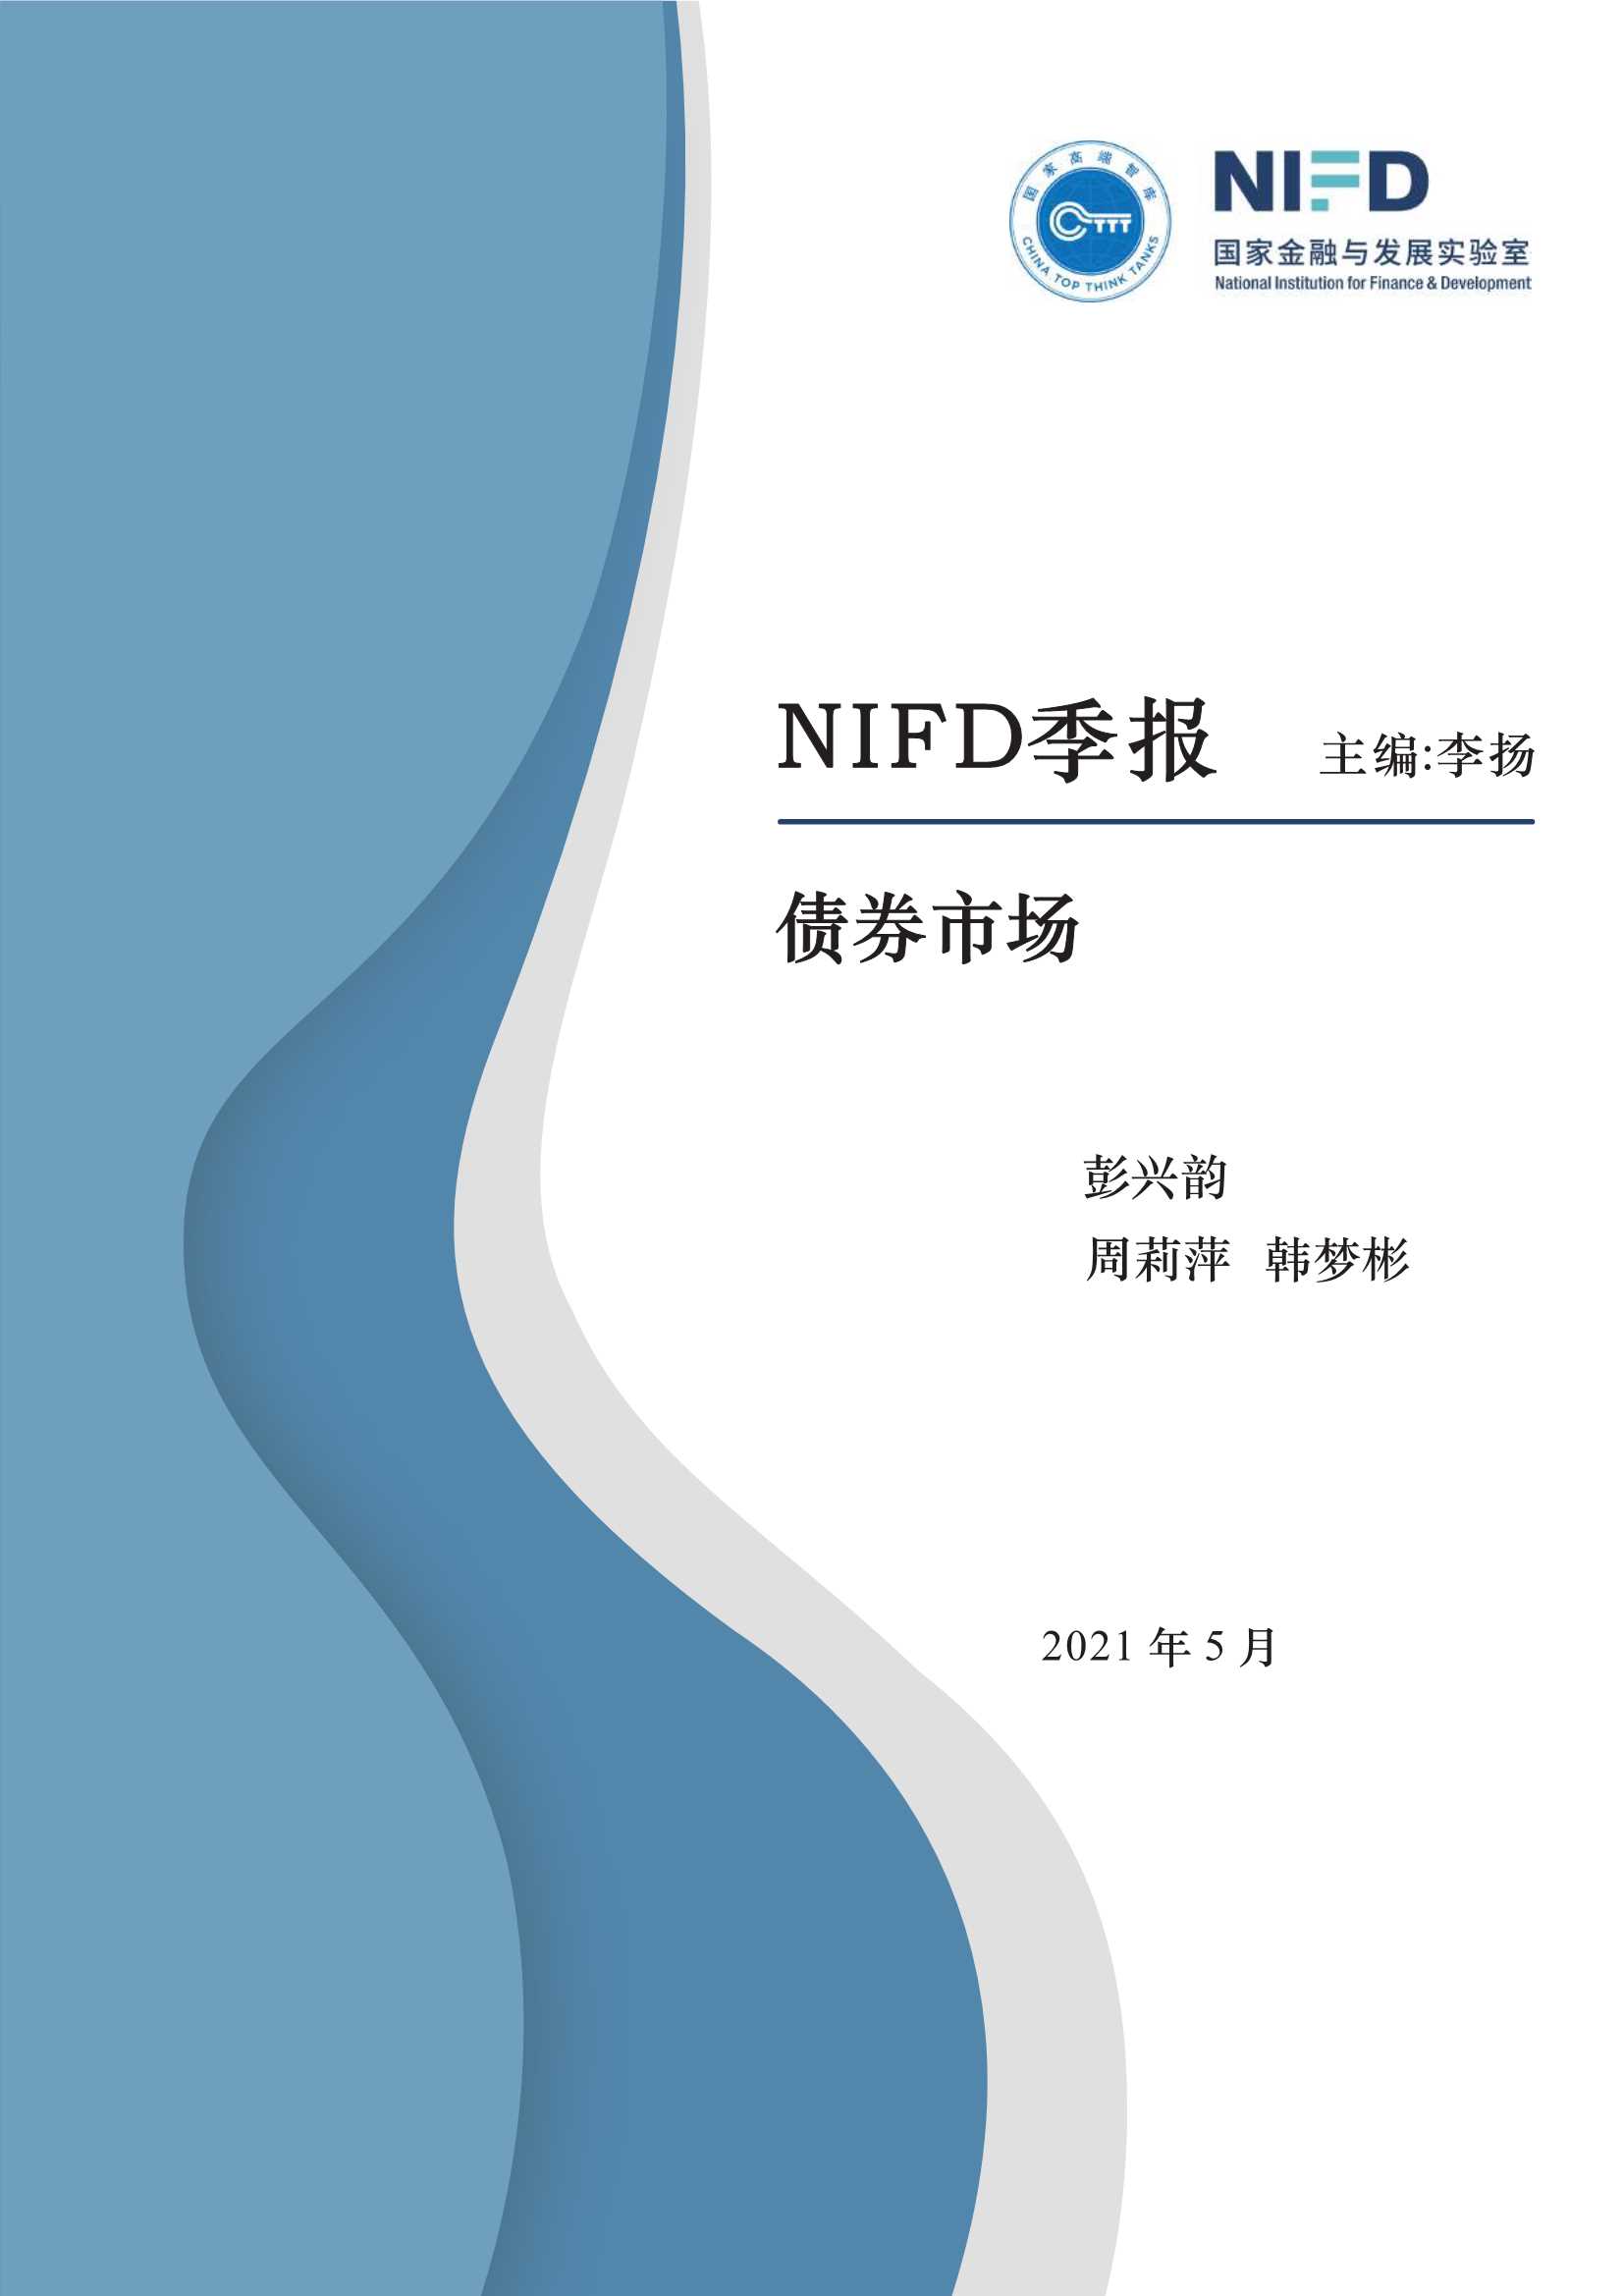 NIFD-2021Q1债券市场-2021.05-17页